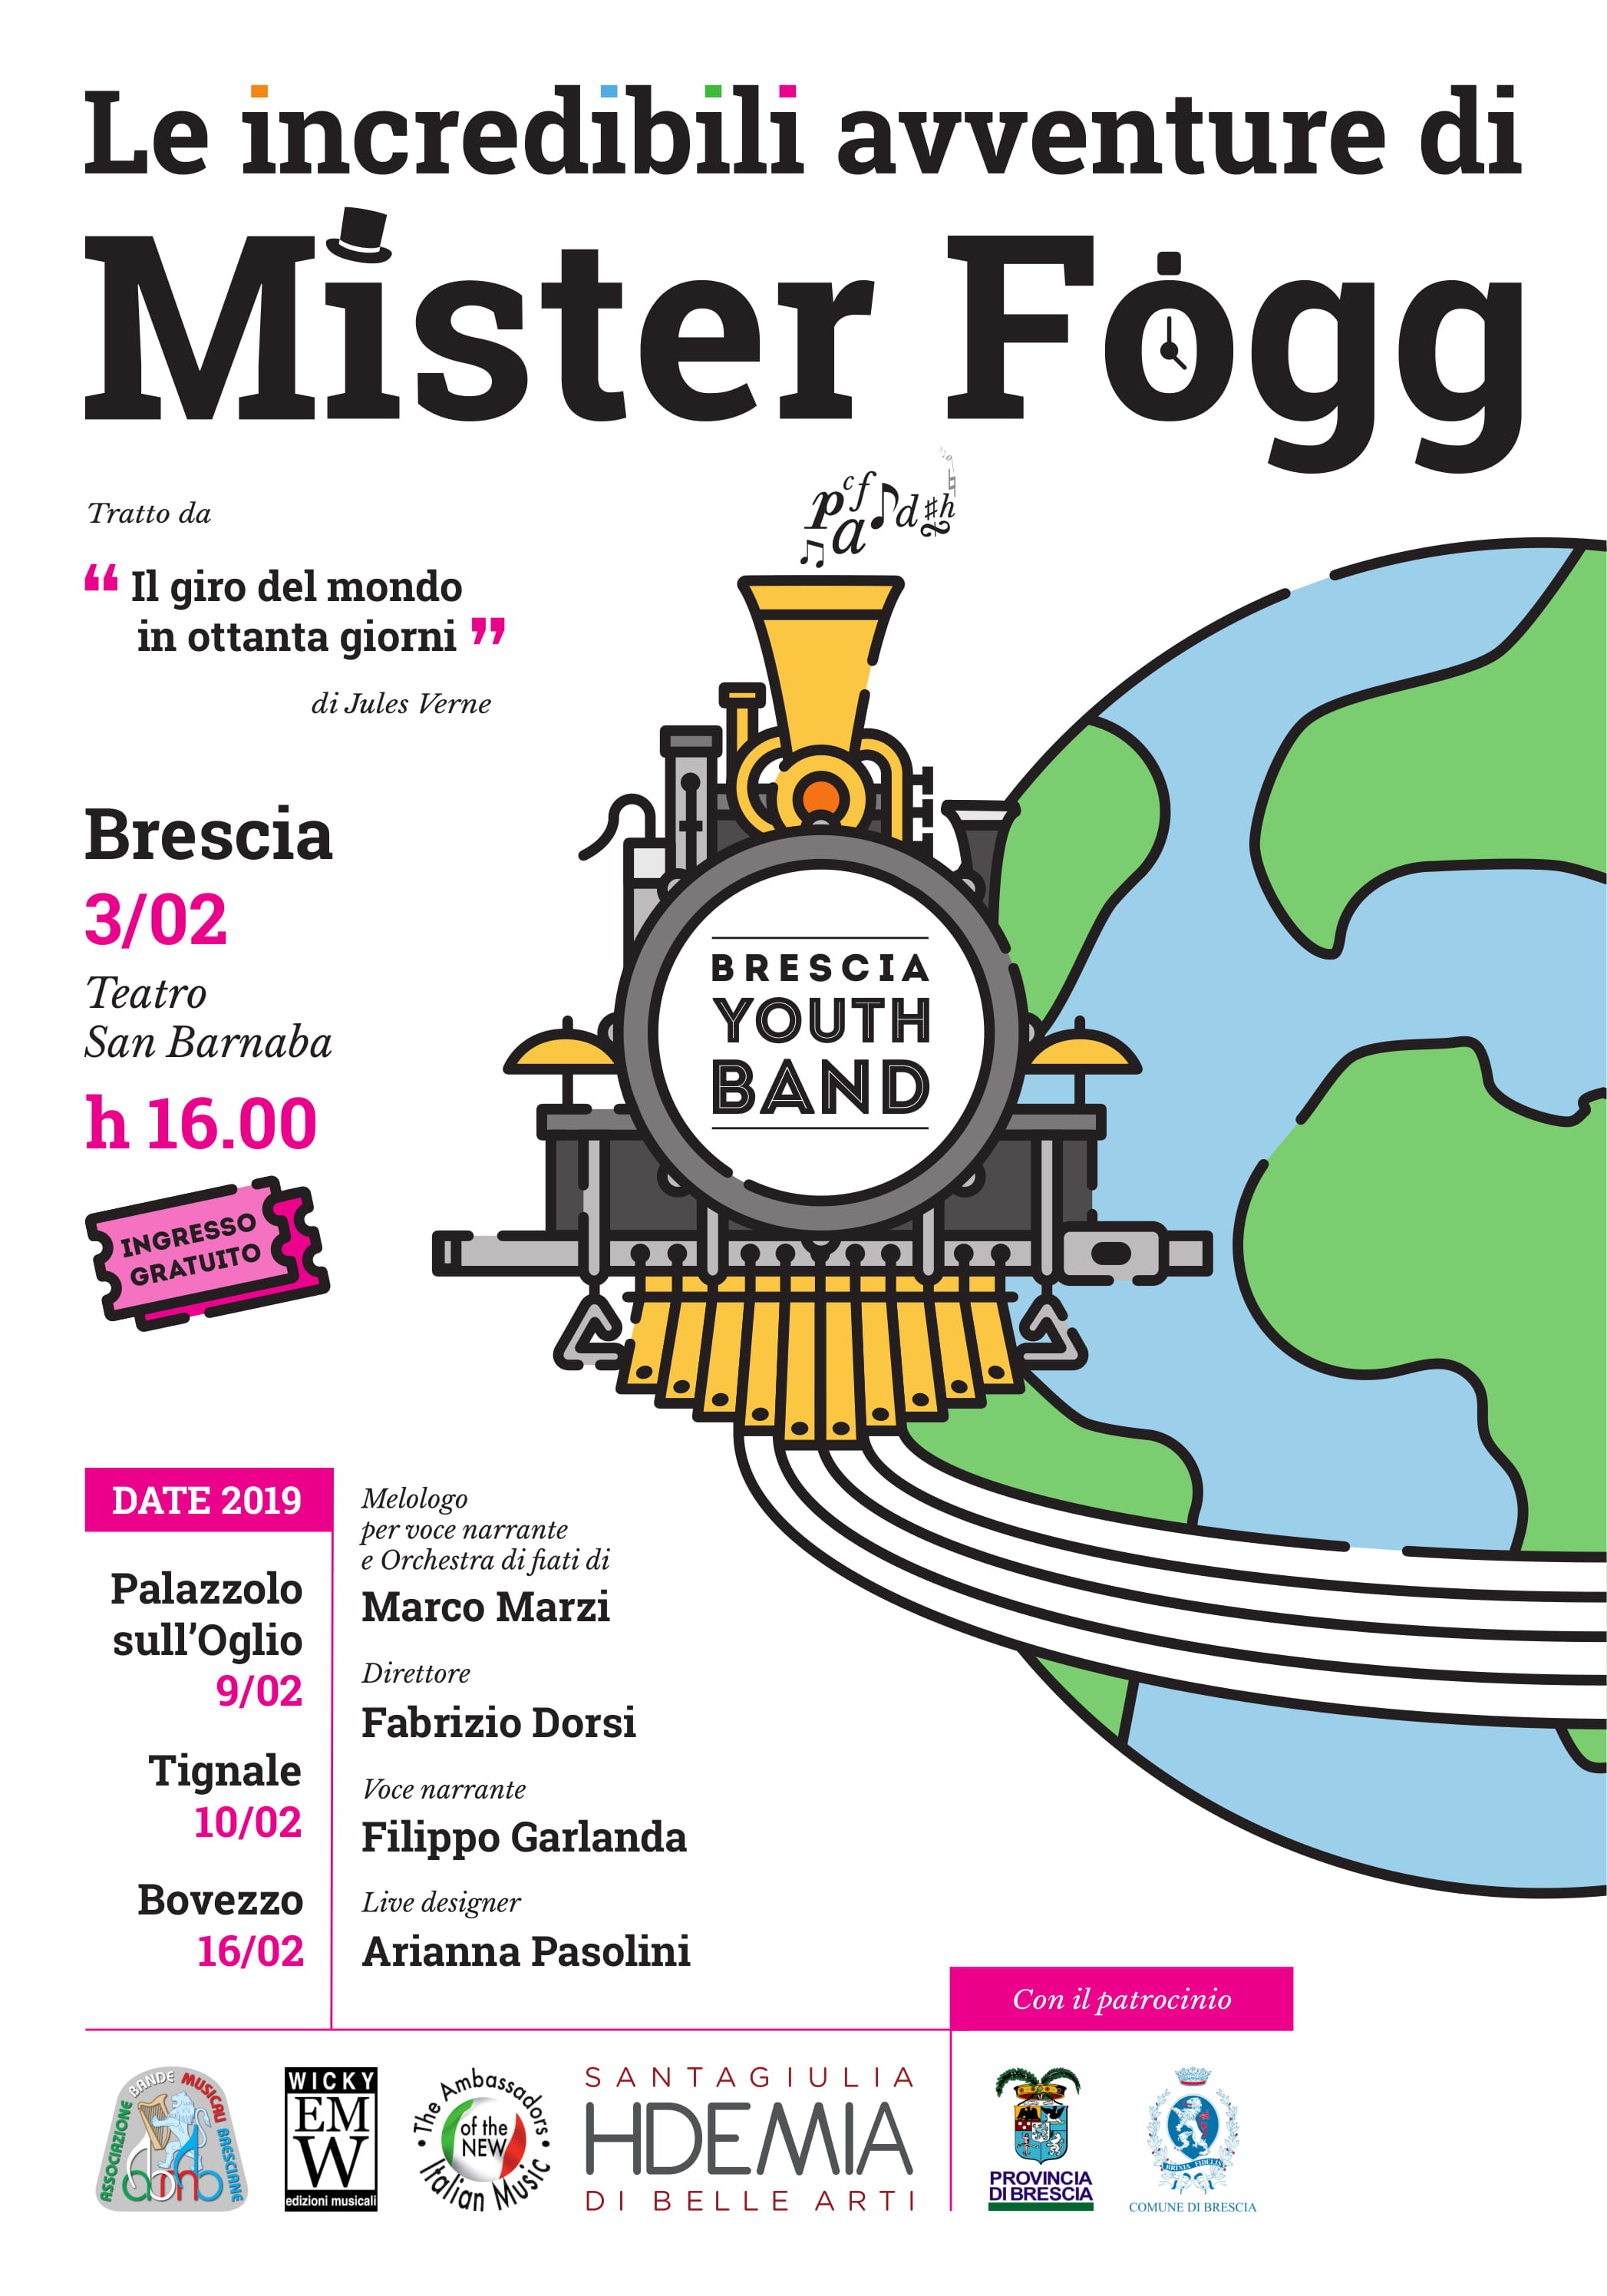 09/02 ore 20:45 – “Le incredibili avventure di Mister Fogg” presso la Casa della Musica